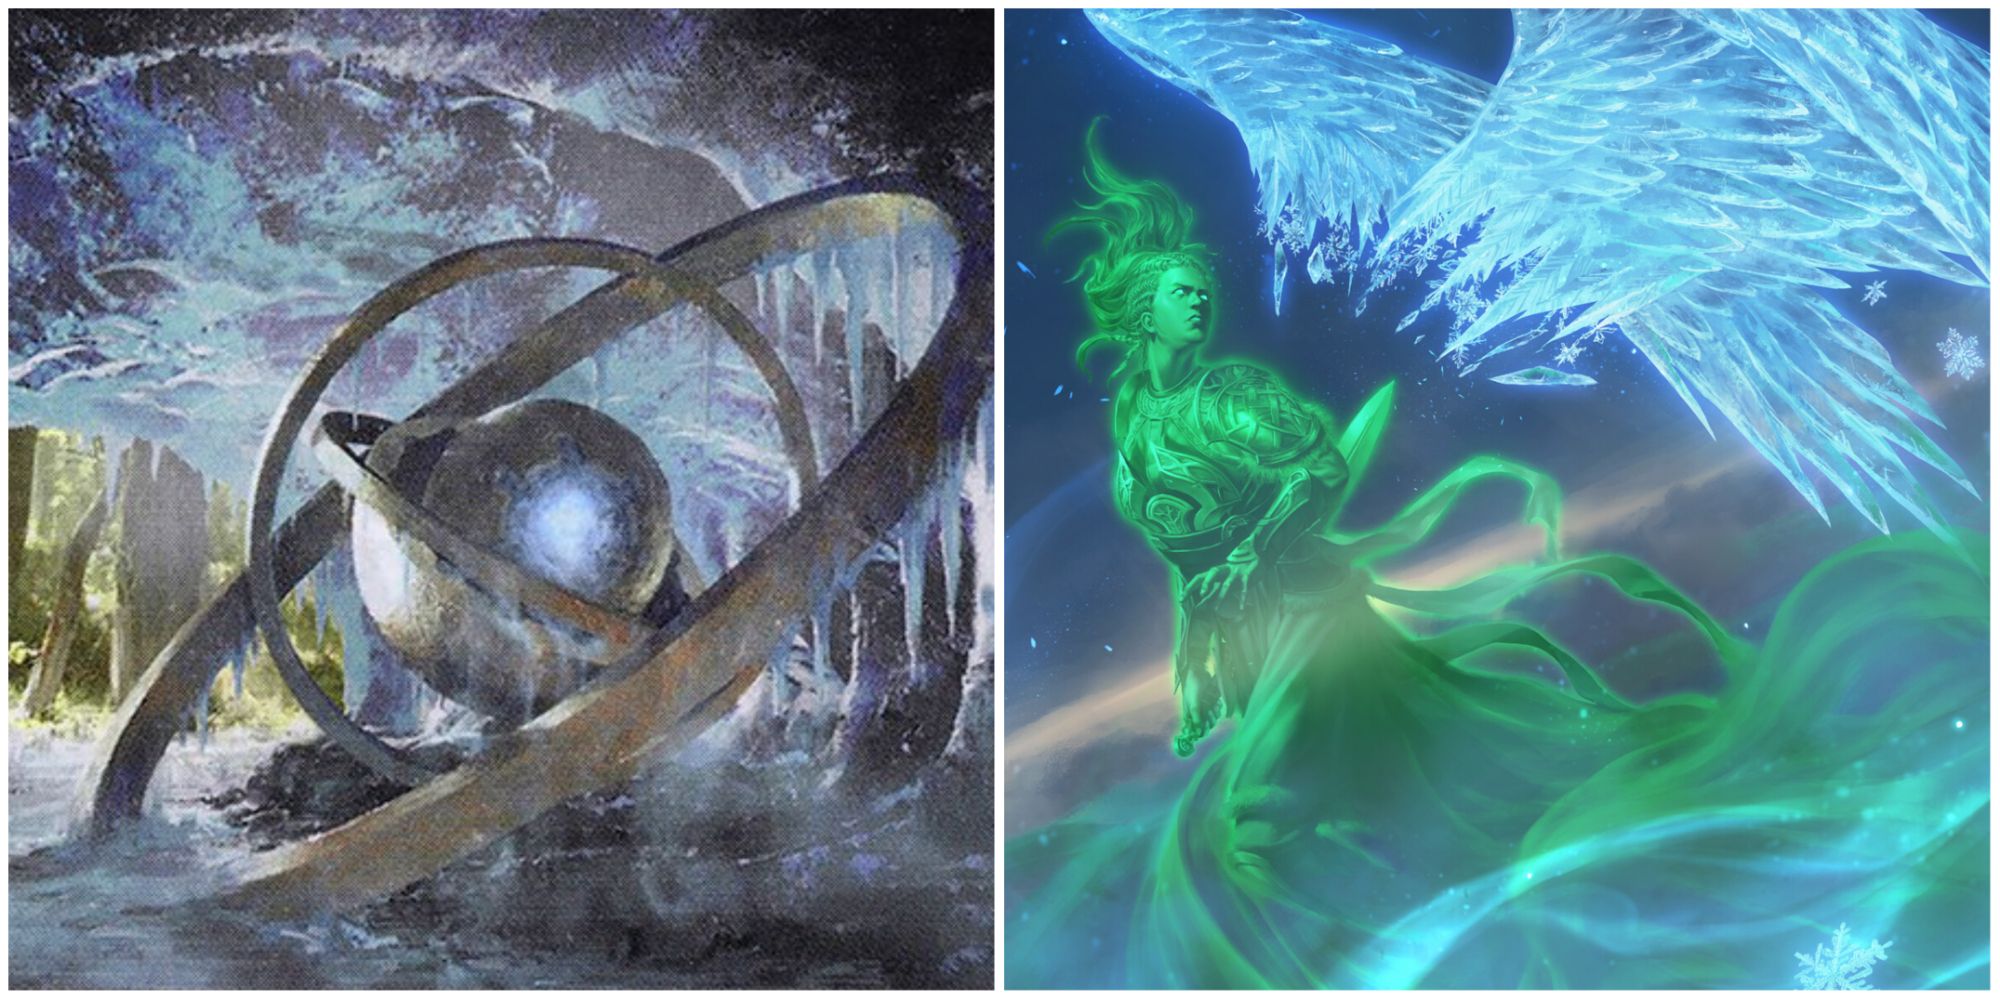 Ascendant Spirit and Arcum's Astrolabe artworks